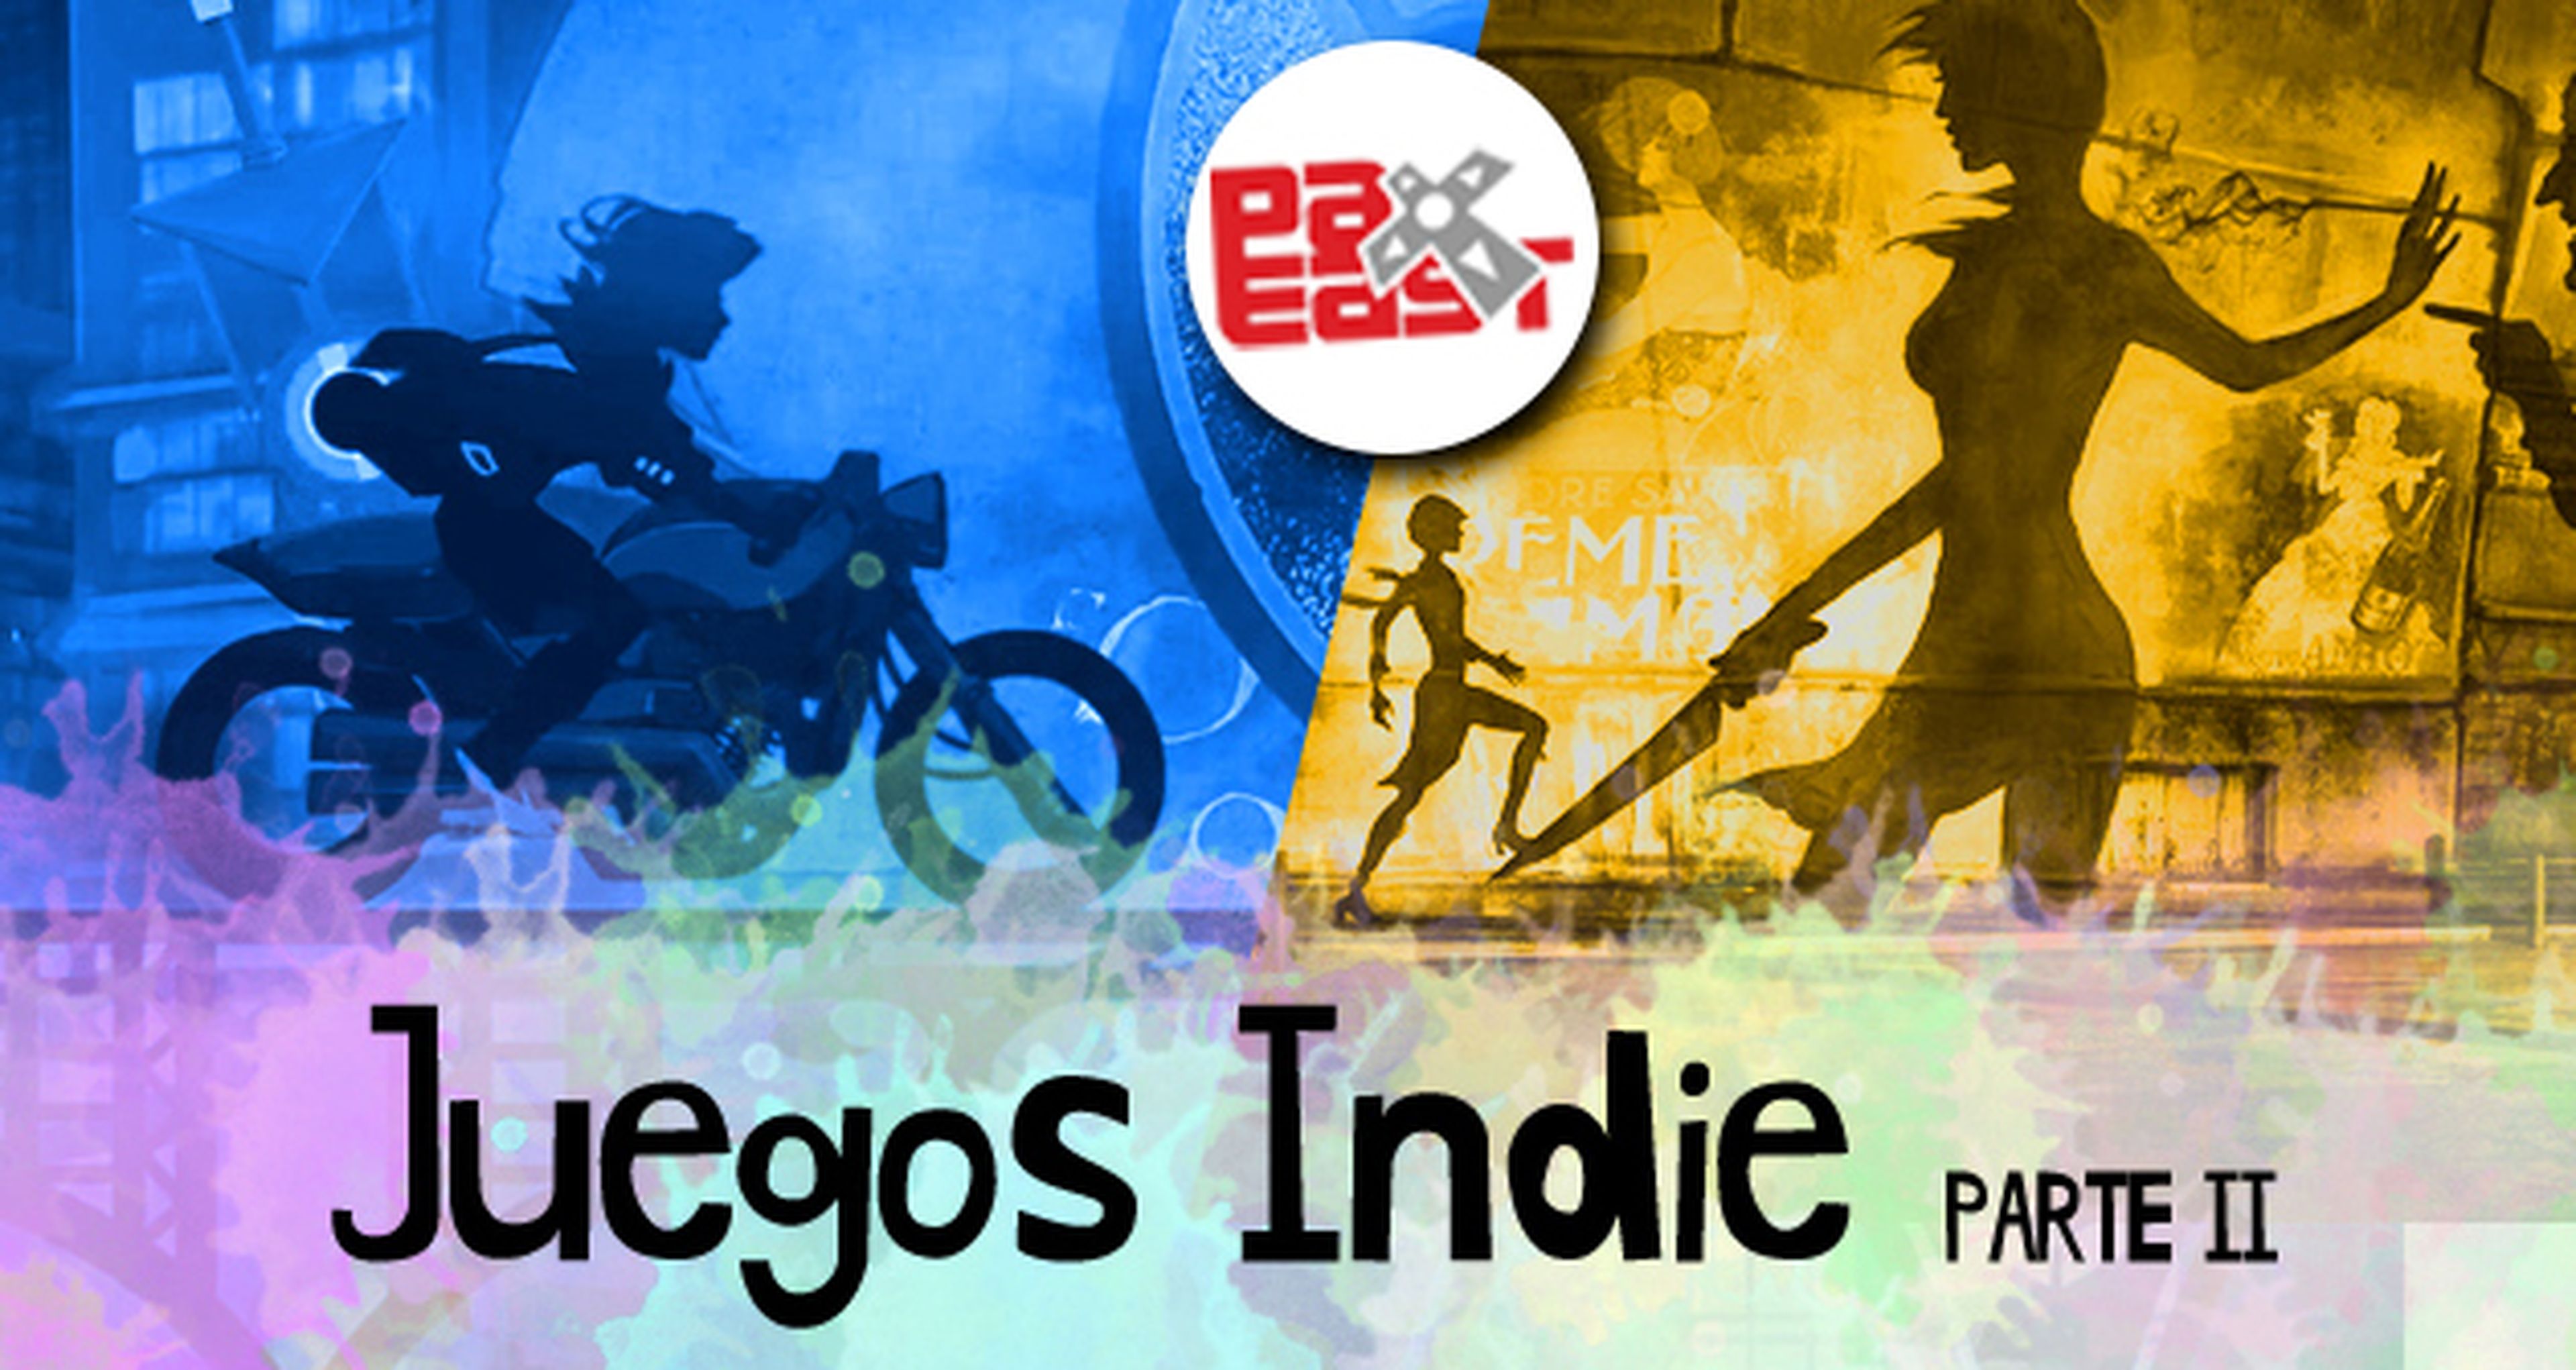 Hobby Consolas en el Pax East: juegos indie (II)